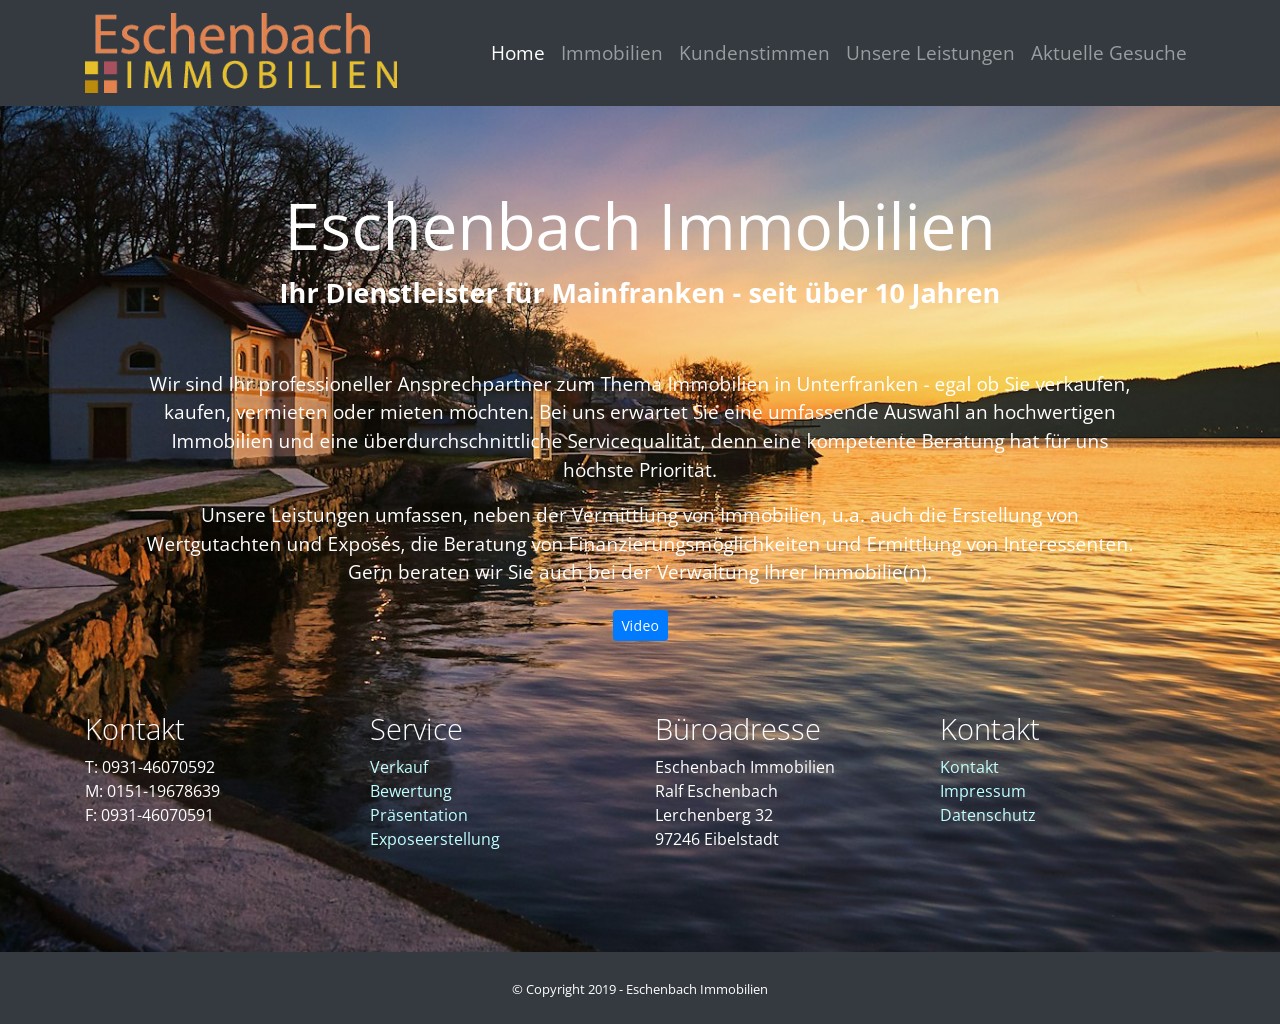 Eschenbach Immobilien